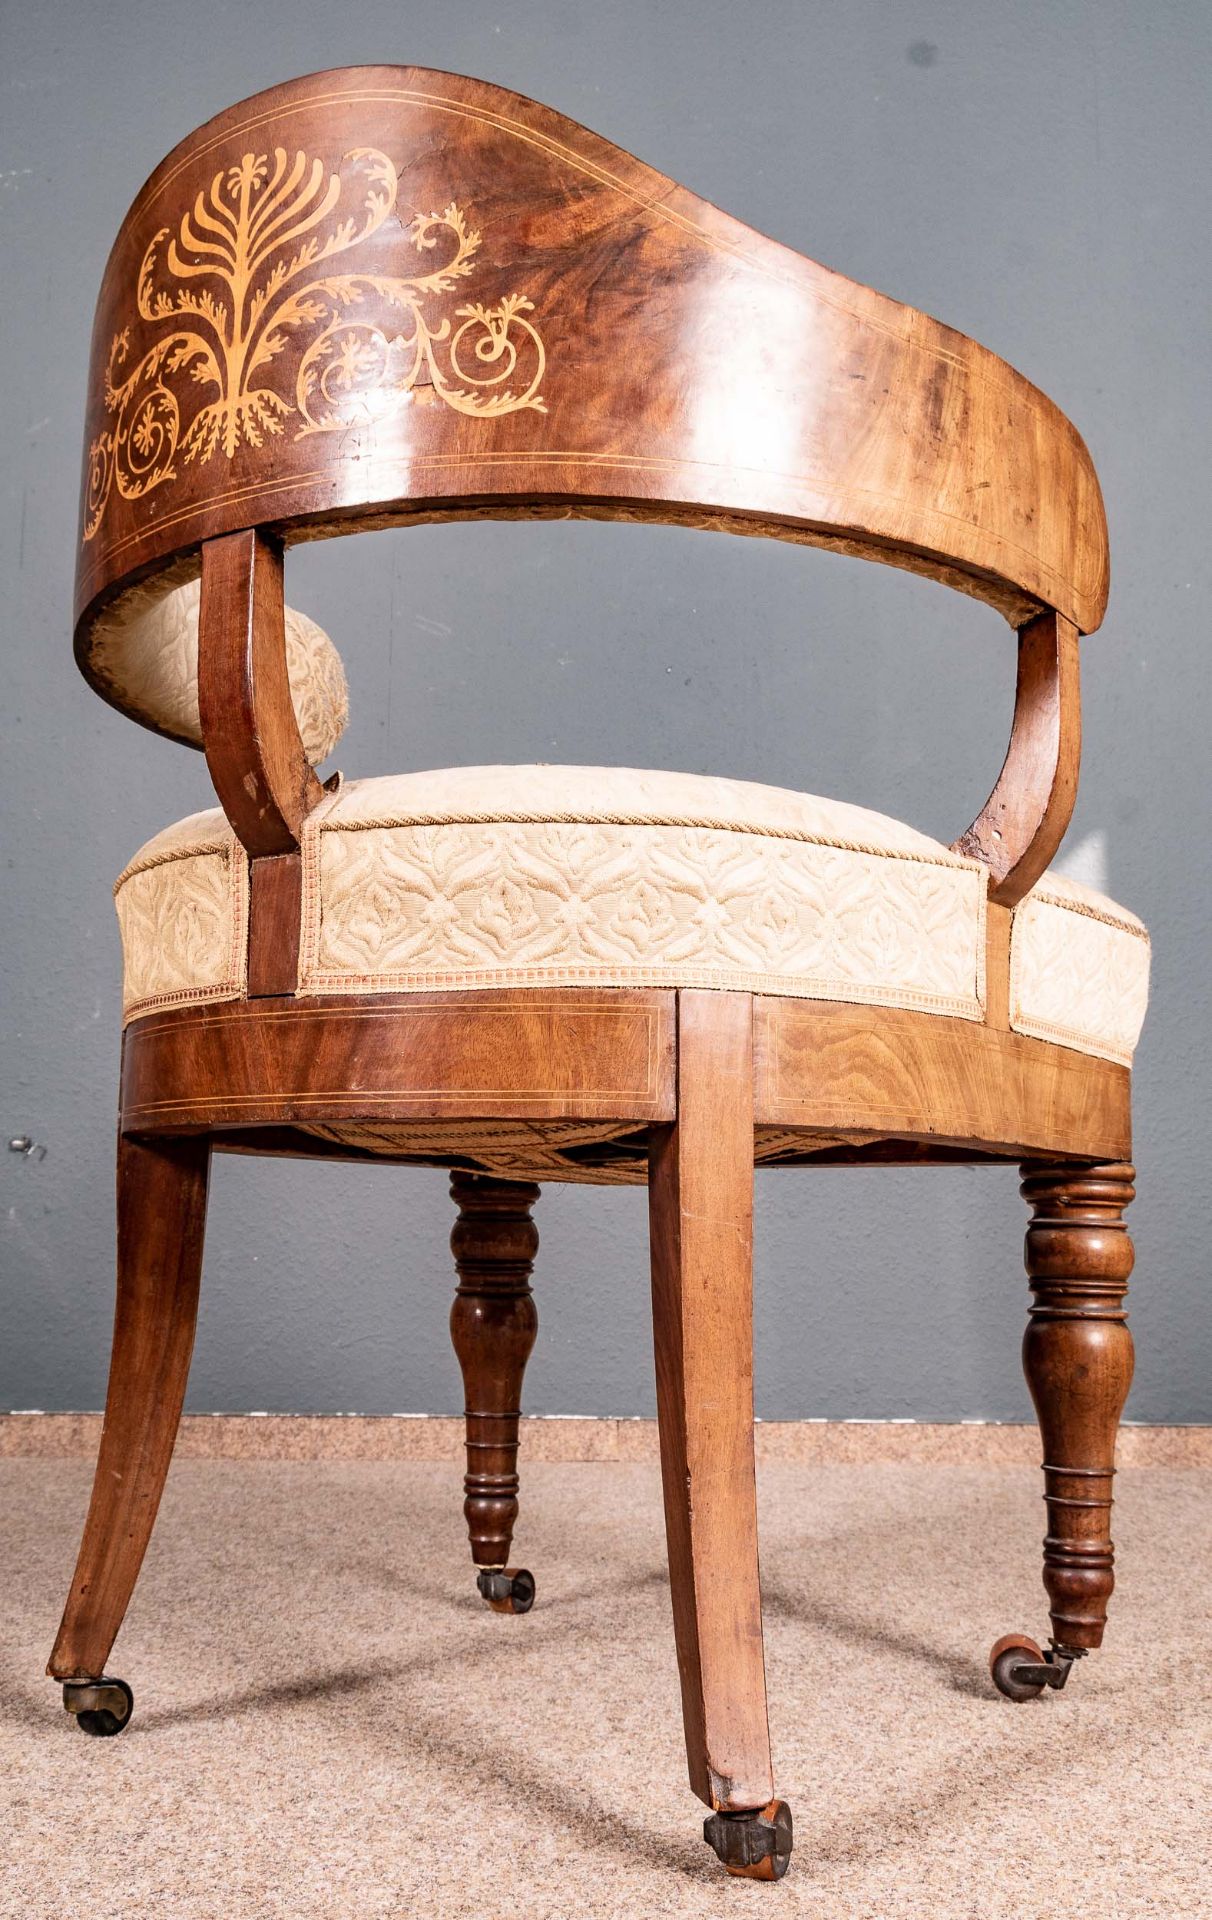 Außergewöhnlicher Schreibtischsessel/Armlehnstuhl mit hochdekorativem "Palmetten-Marketerie-Dekor". - Bild 4 aus 13